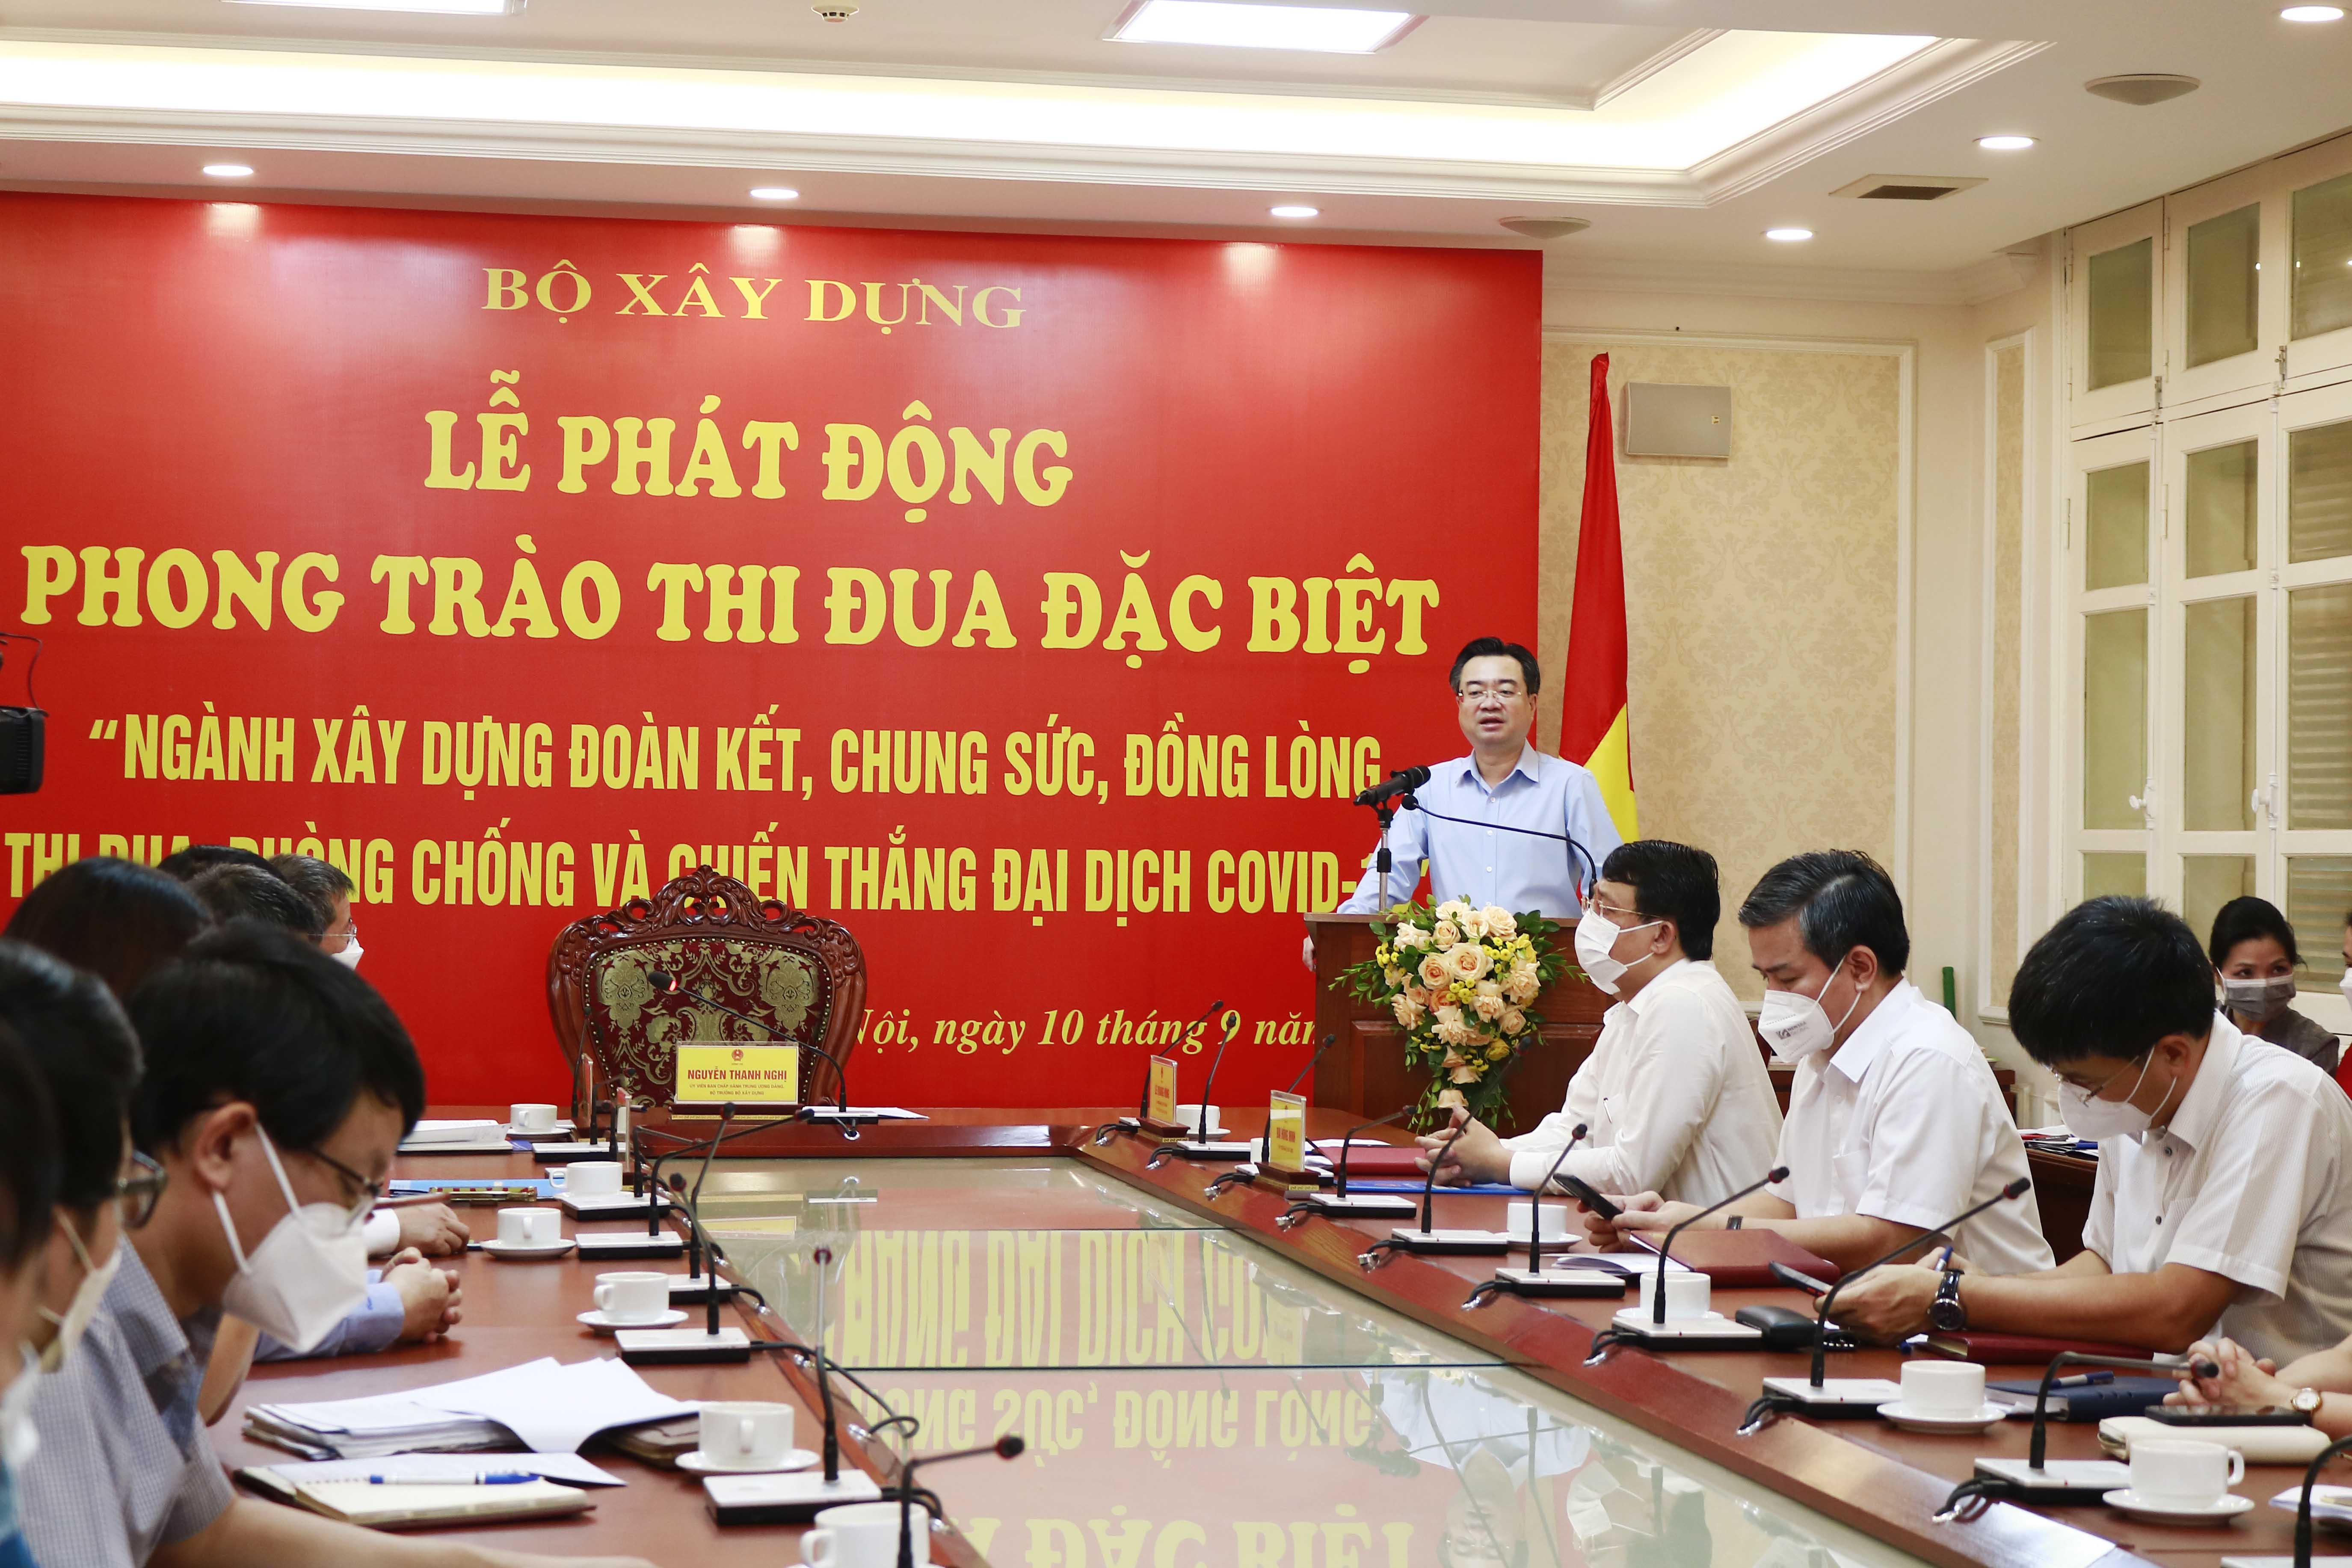 Bộ trưởng Xây dựng Nguyễn Thanh Nghị phát động thi đua đặc biệt trong toàn ngành.